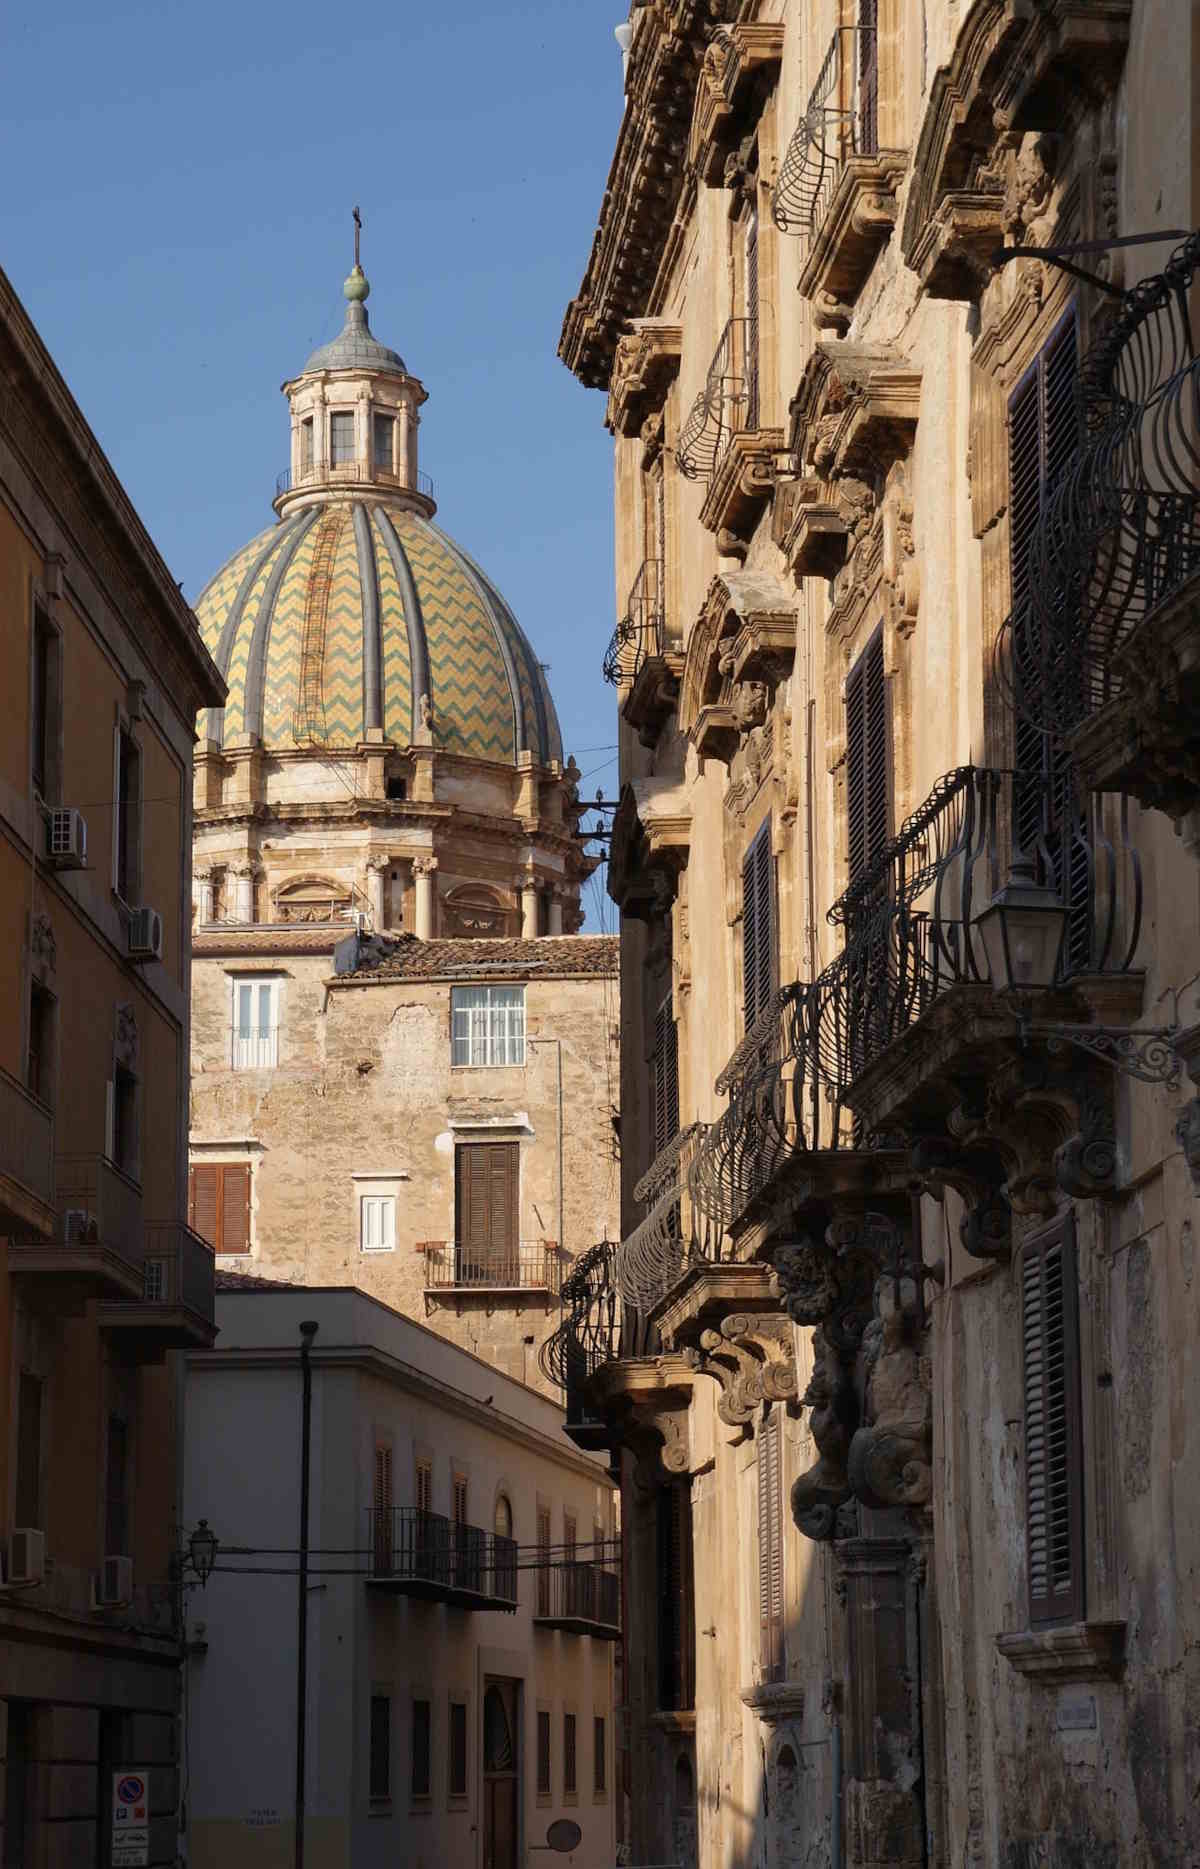 Cosa vedere a Palermo: I diversi stili architettonici passeggiando per i vicoli del centro storico